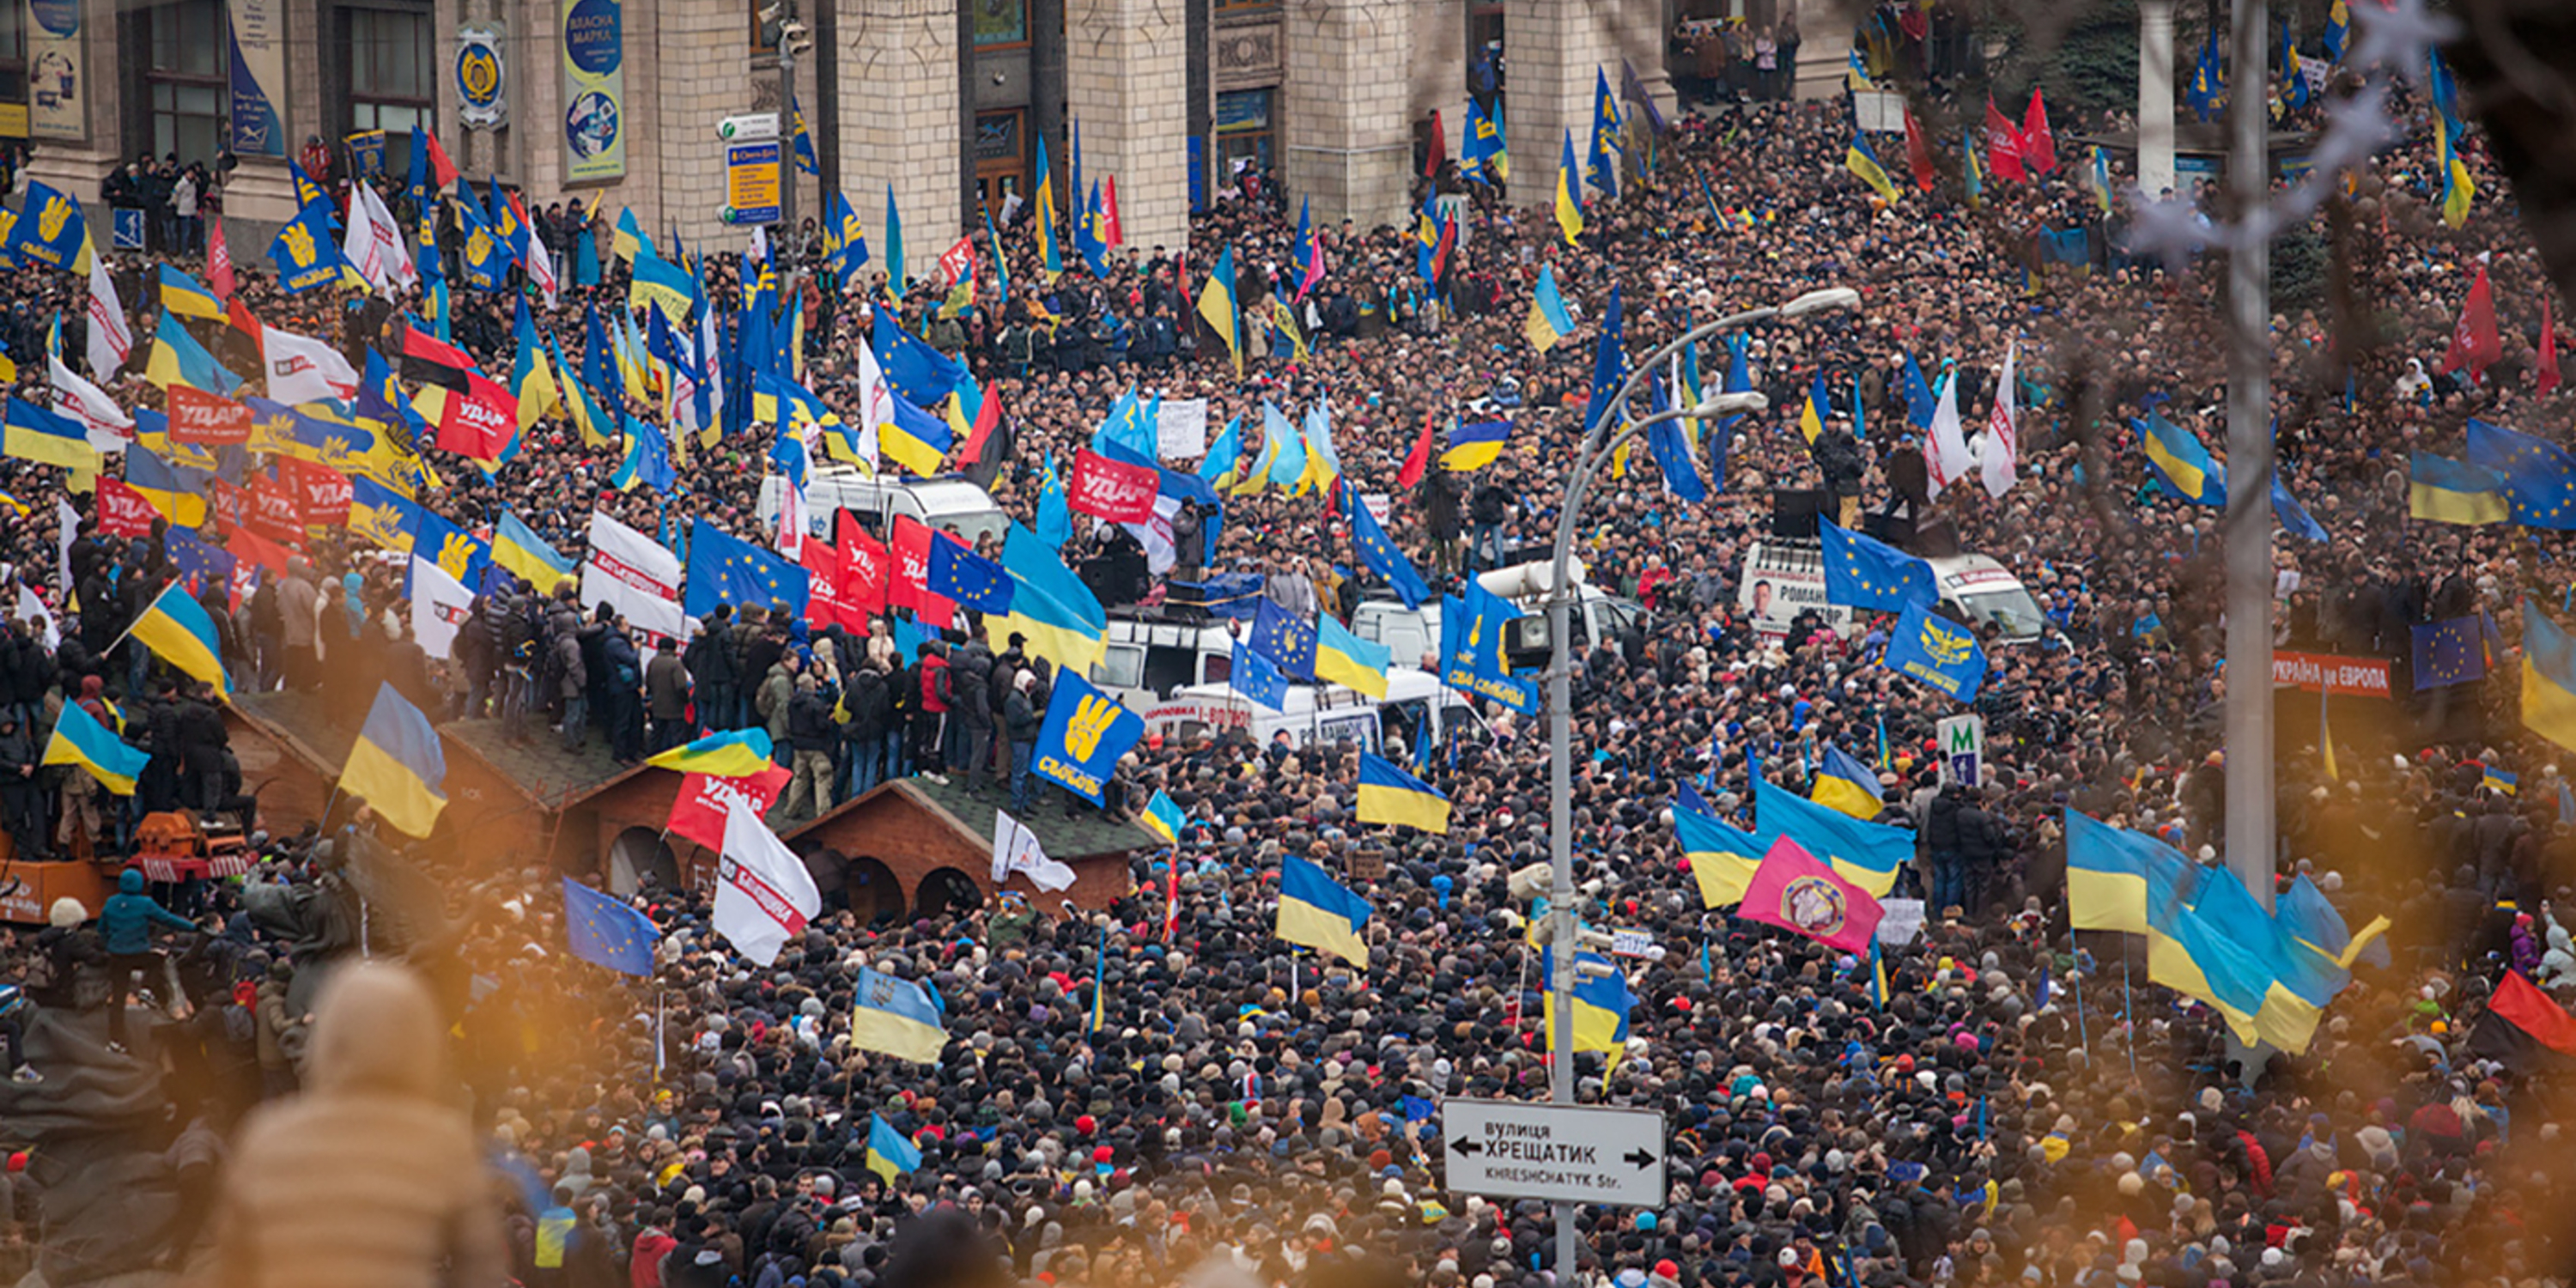 Crowds of people waving Ukrainian flags